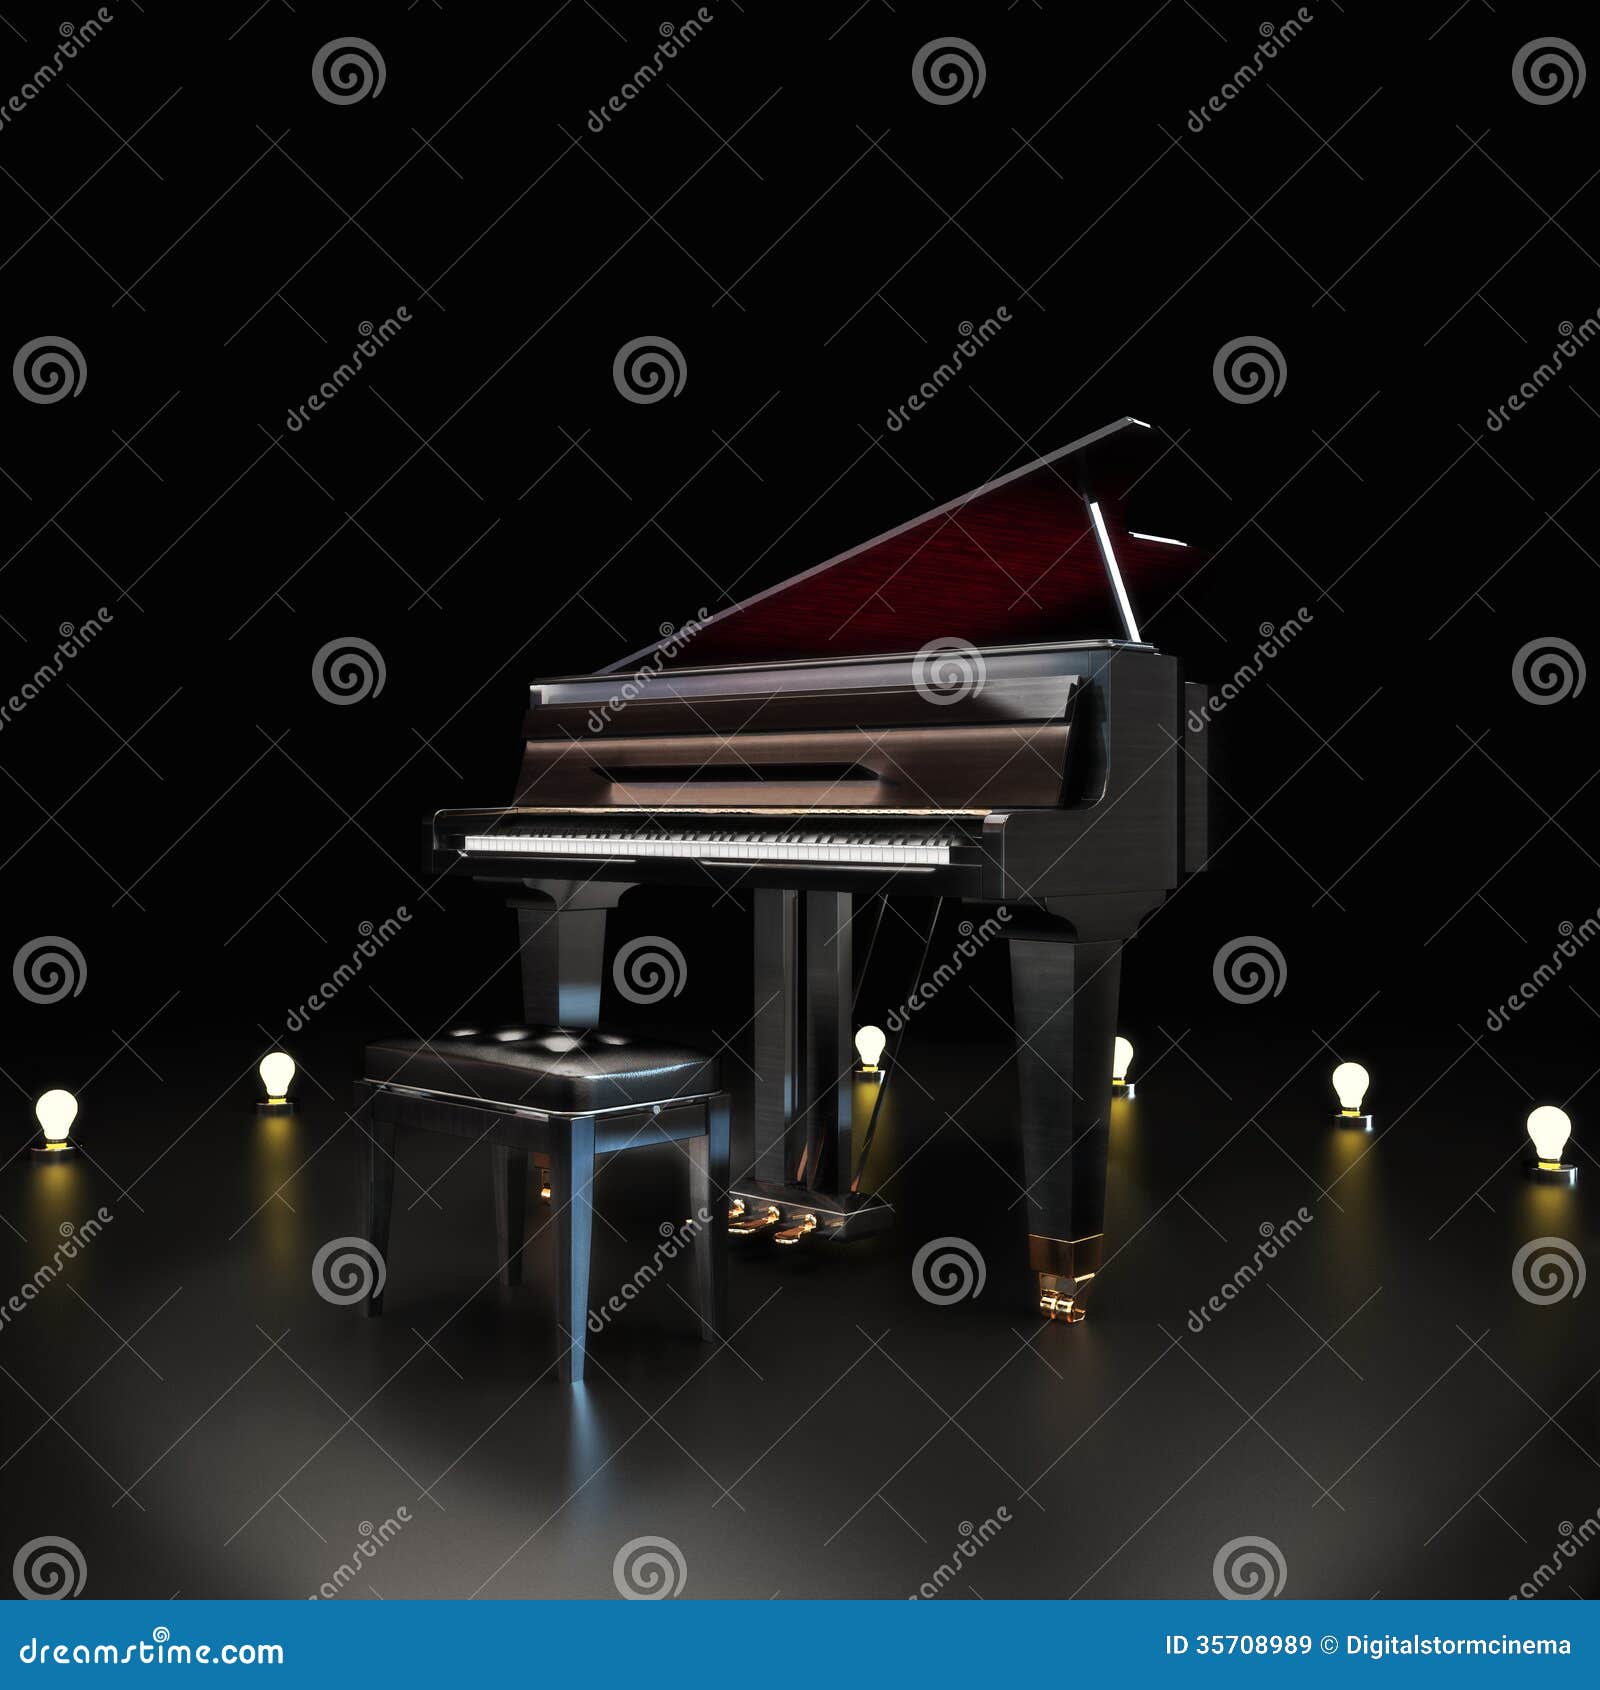 Elegant piano stock illustration. Image of learning ...